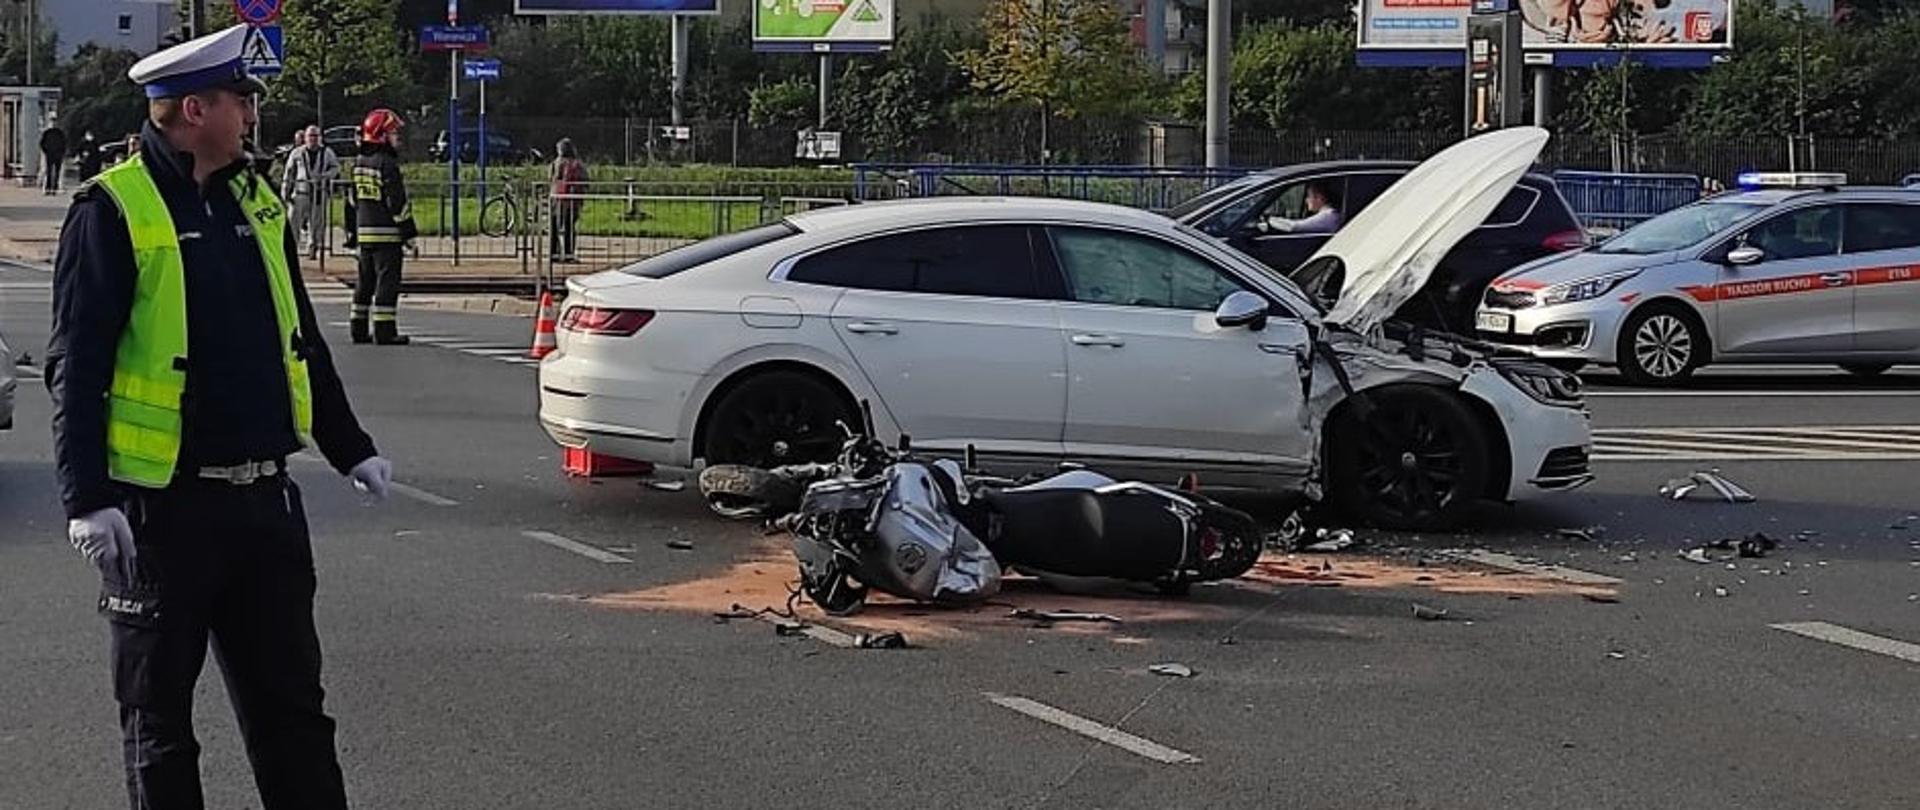 Na zdjęciu widoczny jest motocykl oraz samochód osobowy, pojazdy brały udział w wypadku oraz policjant.